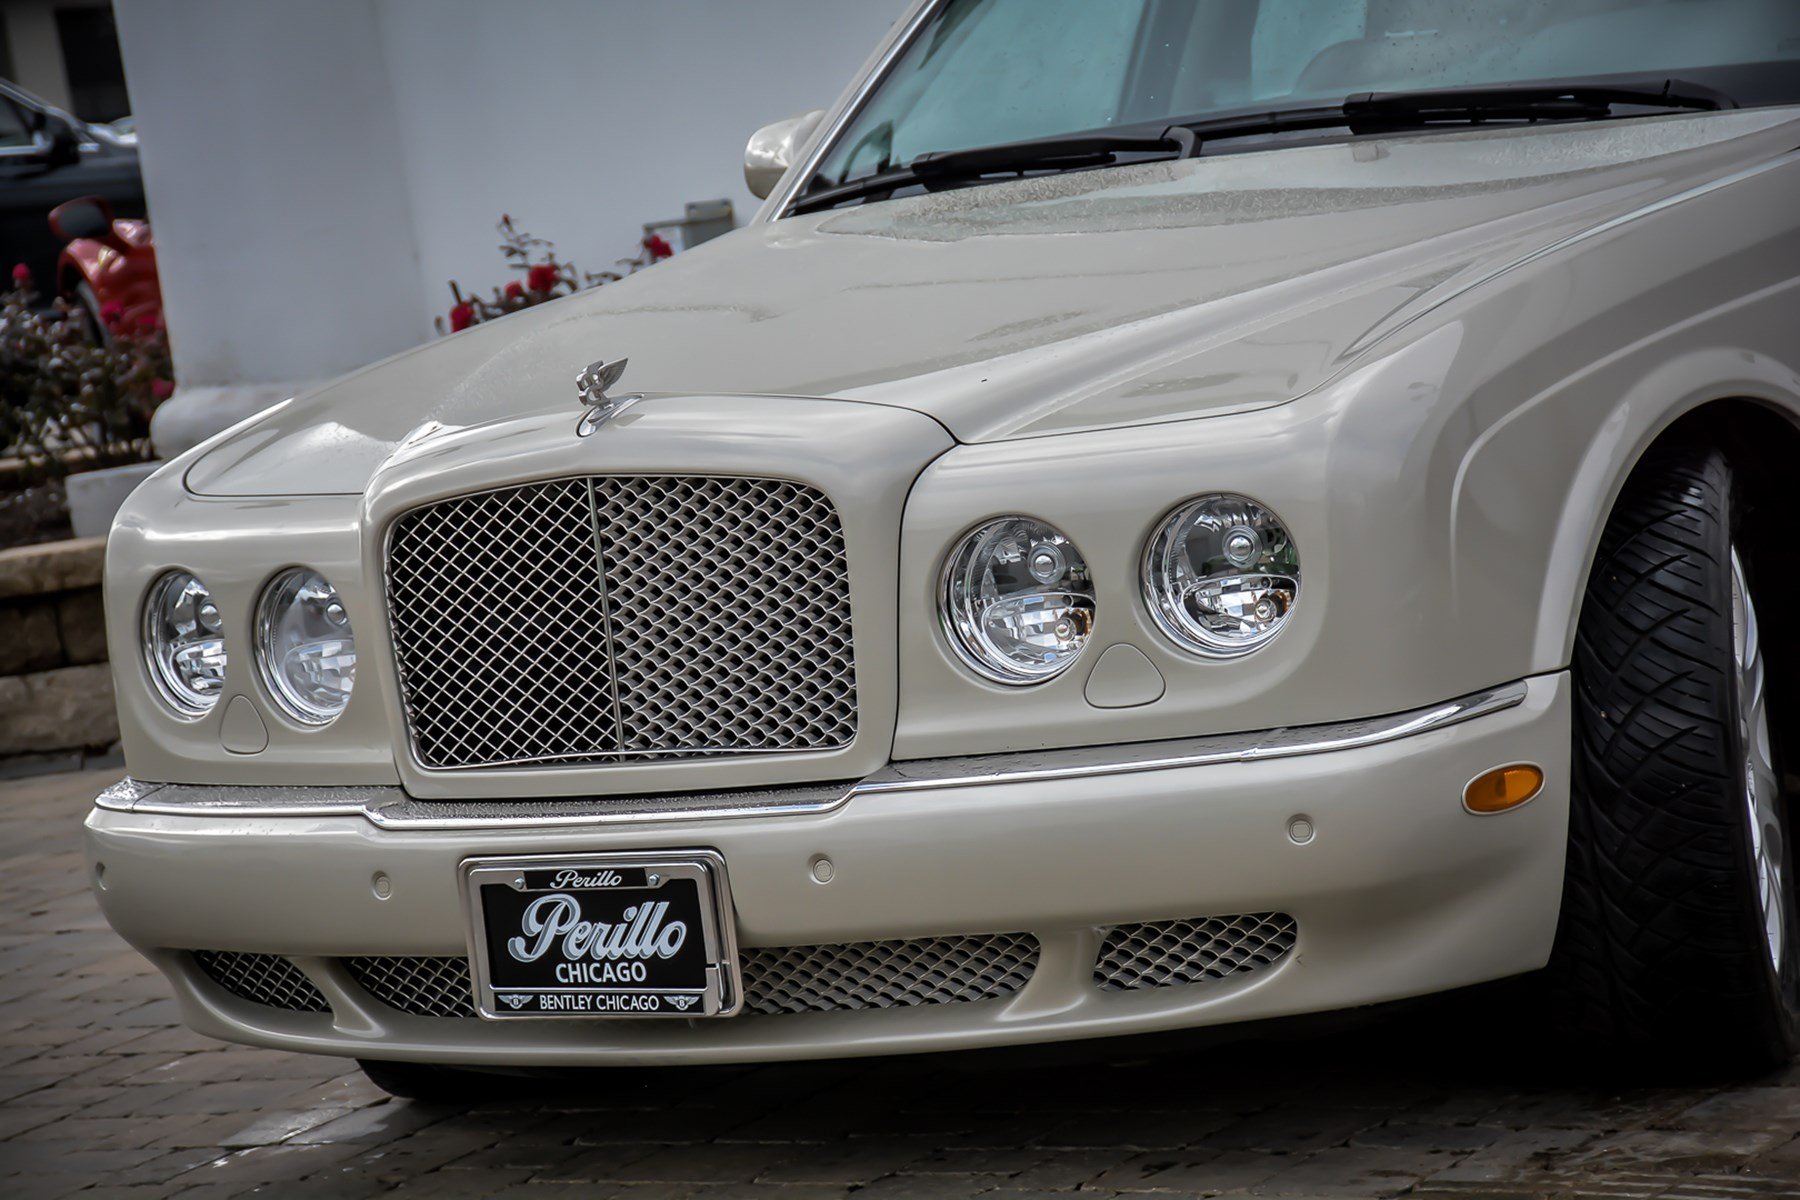 Luxury On Wheels: The 2007 Bentley Arnage